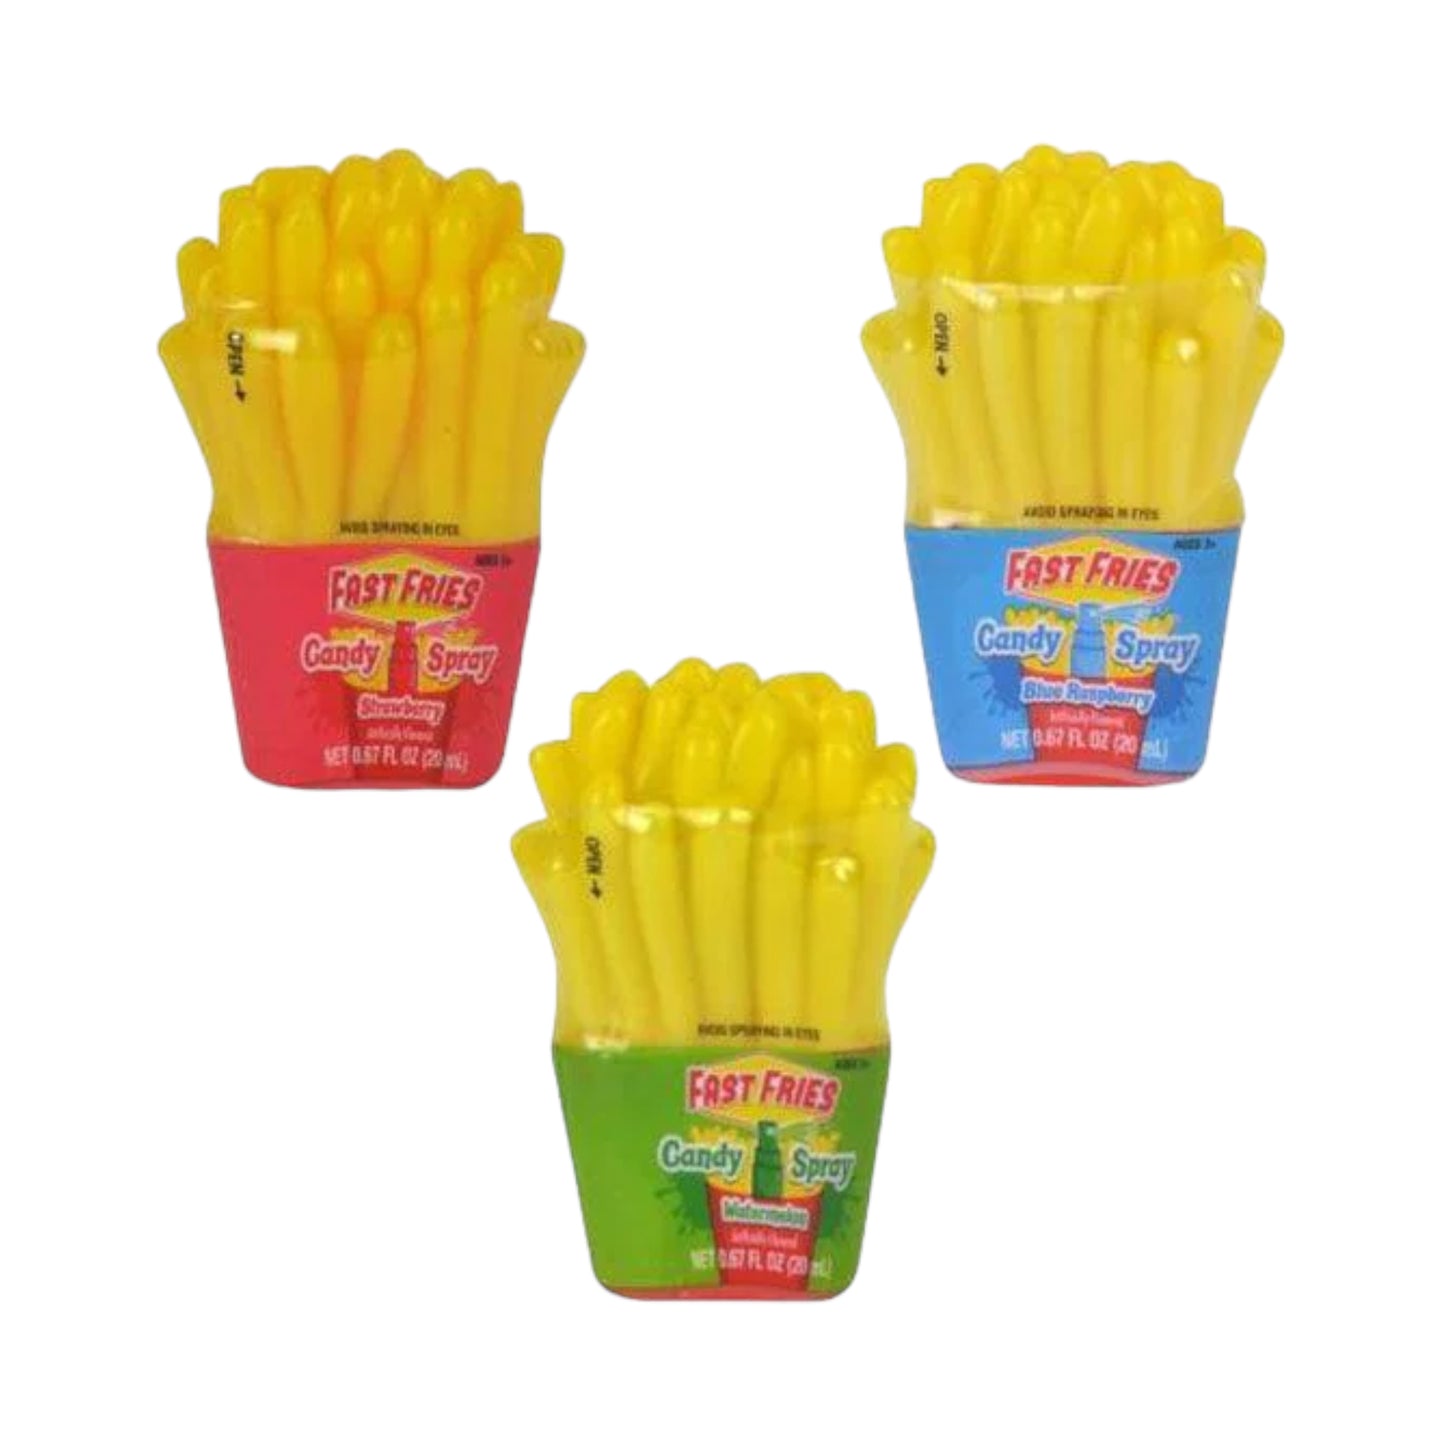 KoKo's Fast Fries Candy Spray 0.6fl oz (20ml)